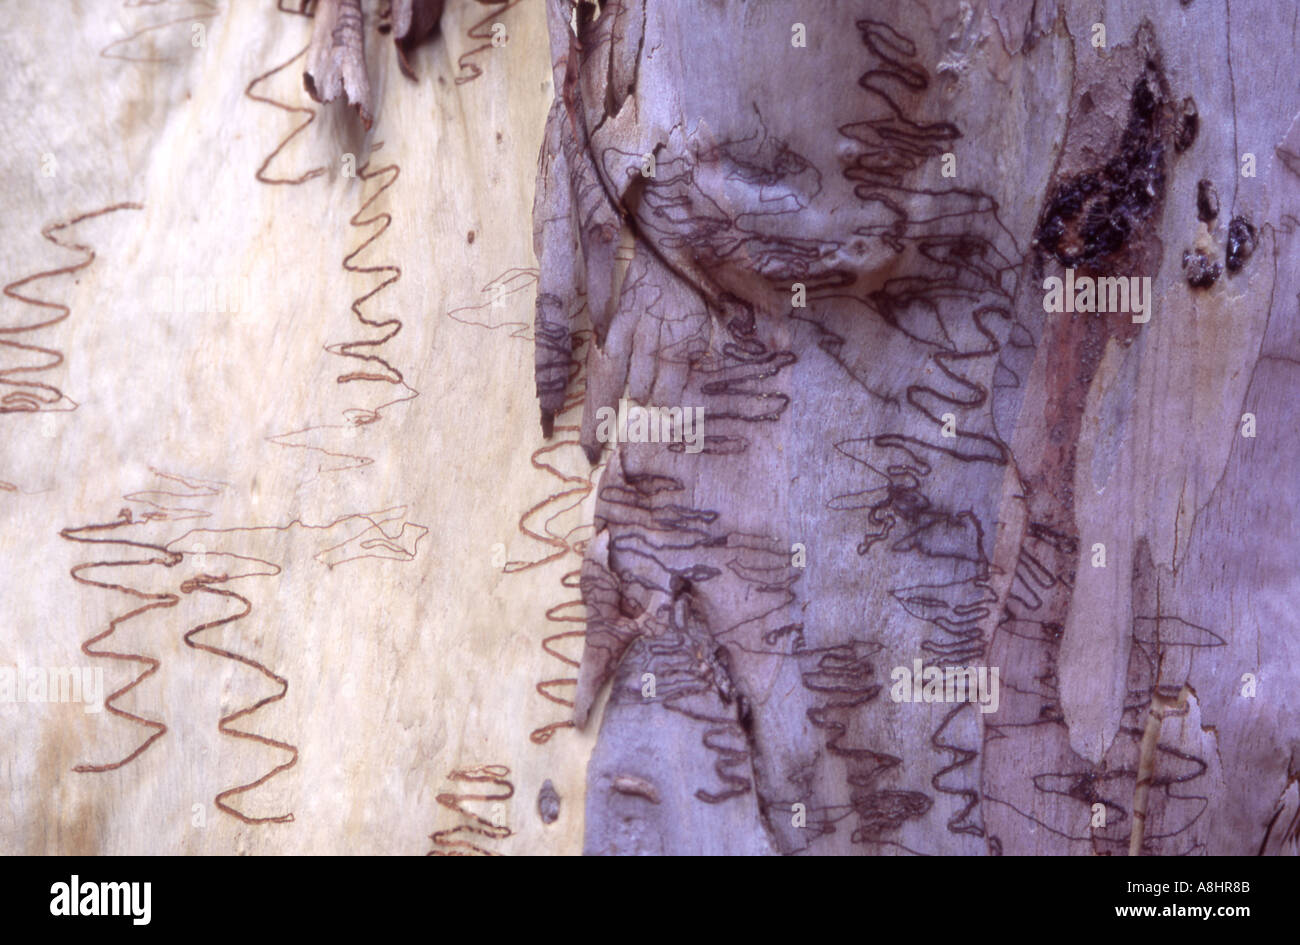 Résumé détail Scribbly gum Eucalyptus haemastoma Australie montrant les larves de la caractéristique marque terrier Banque D'Images